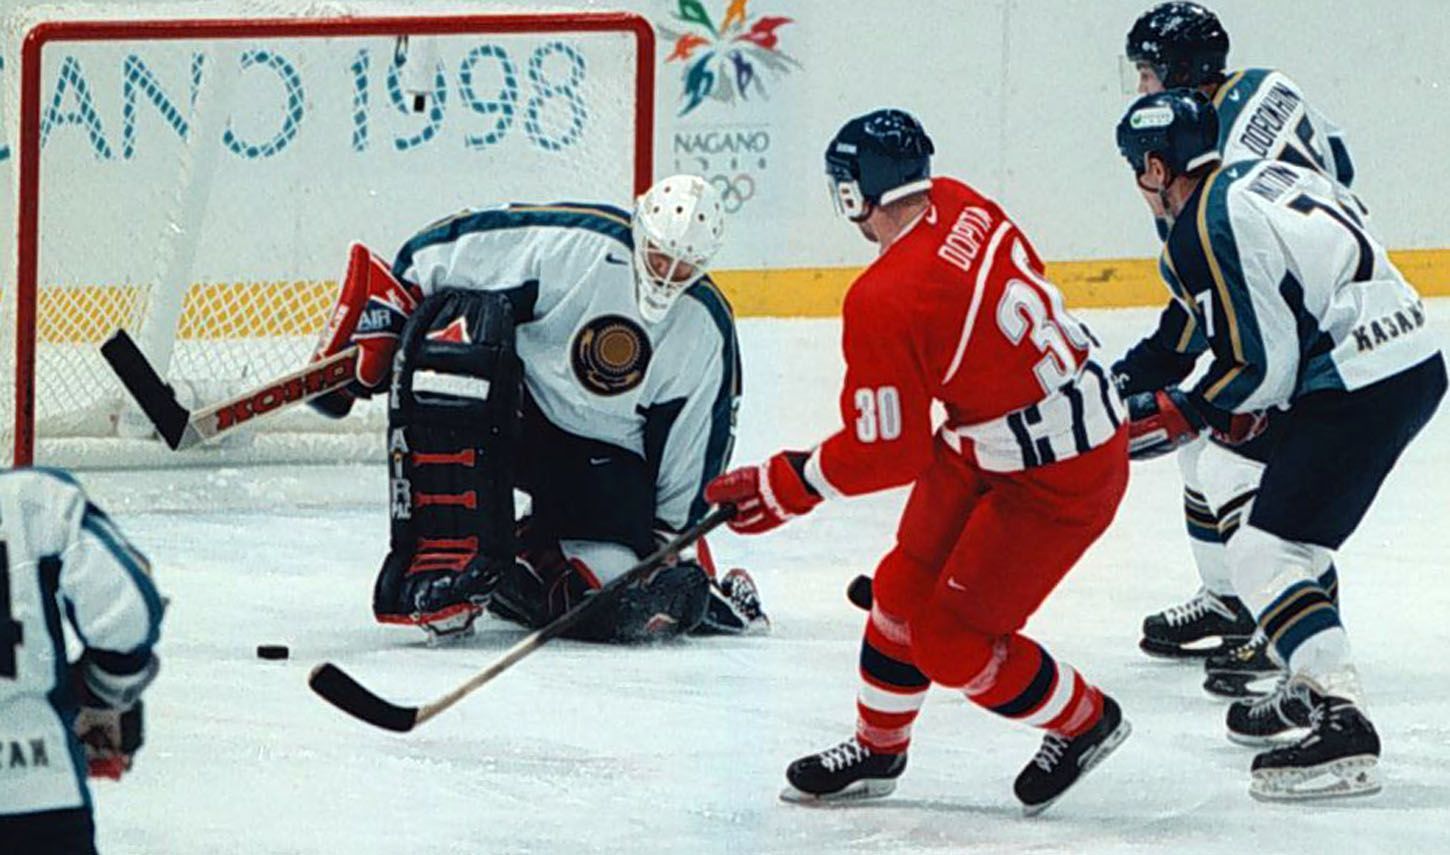 Archivní snímky z ZOH Nagano 1998 - hokej. Jiří Dopita